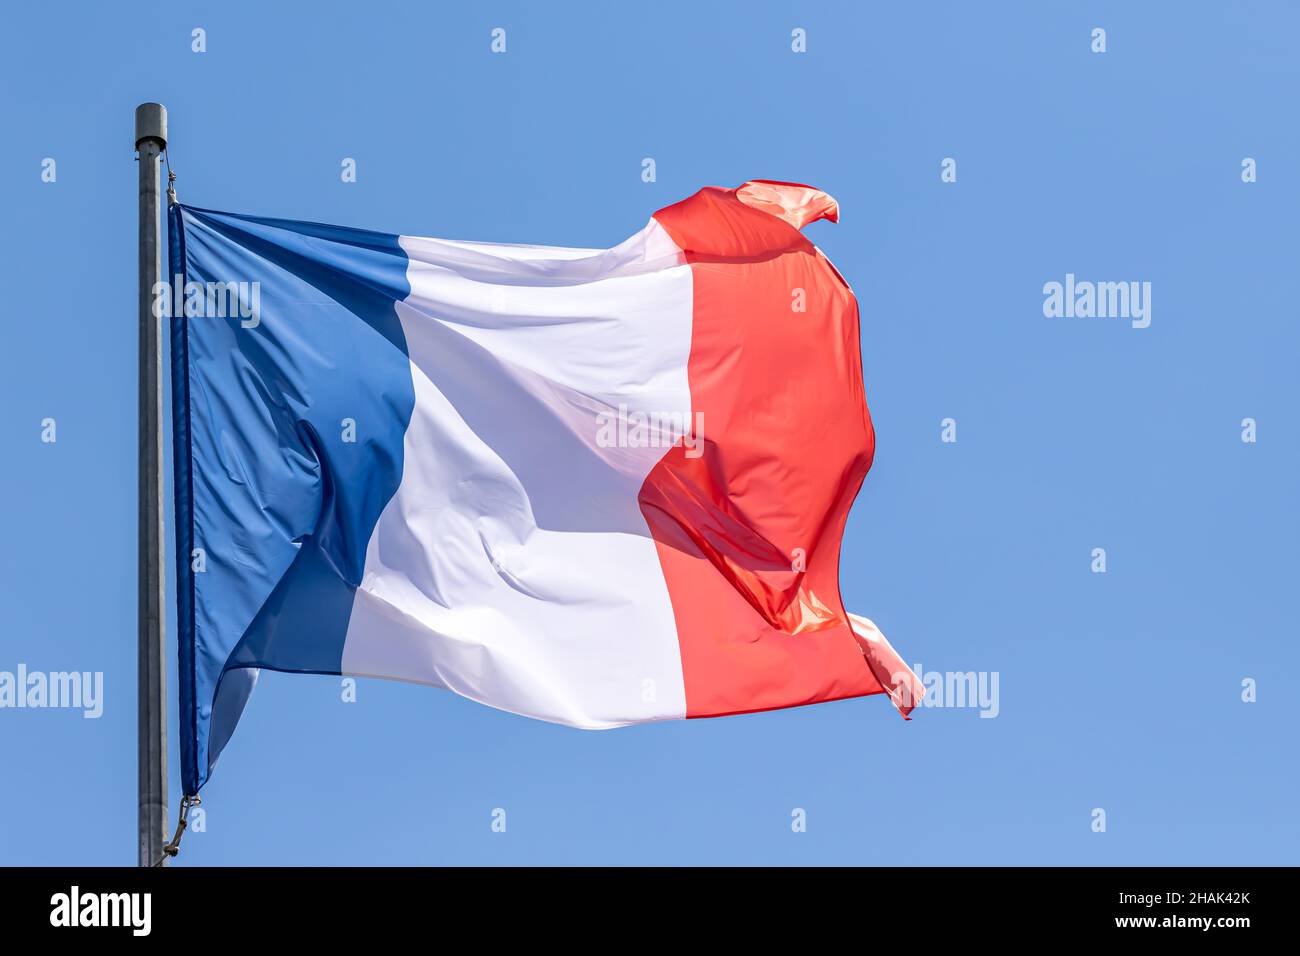 Französische Nationalflagge winkt auf blauem Himmel Hintergrund. Französische Republik, FR Stockfoto